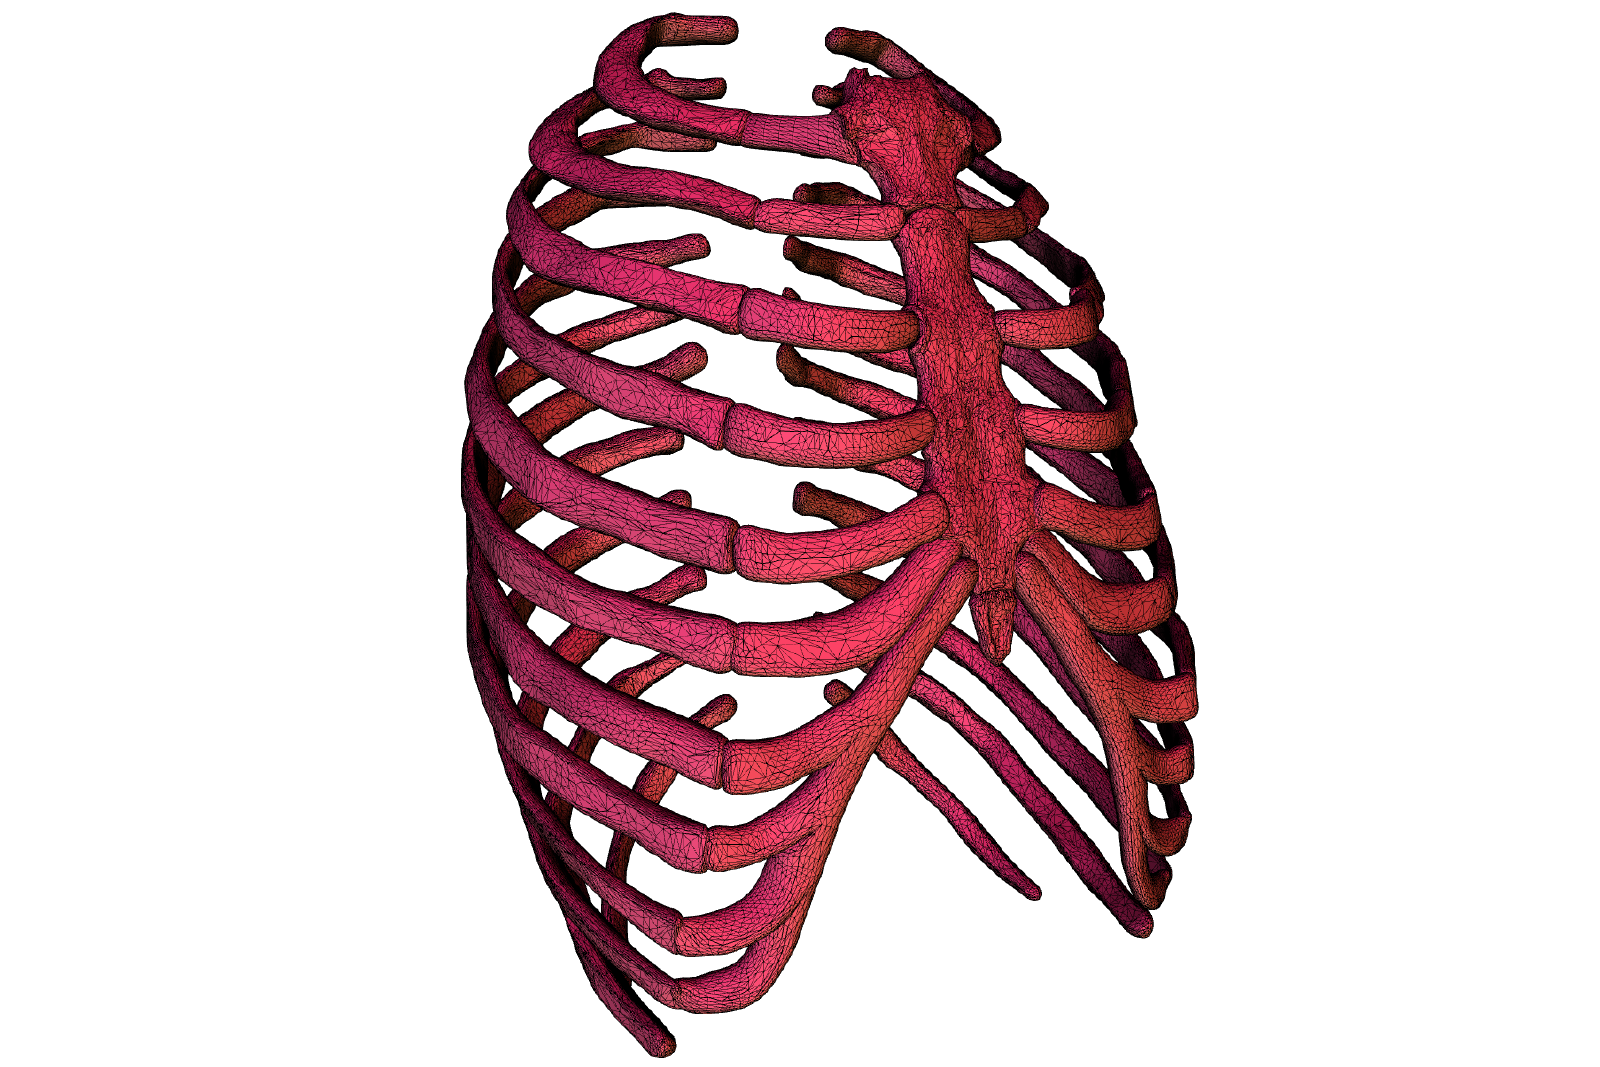 3d model of a ribcage